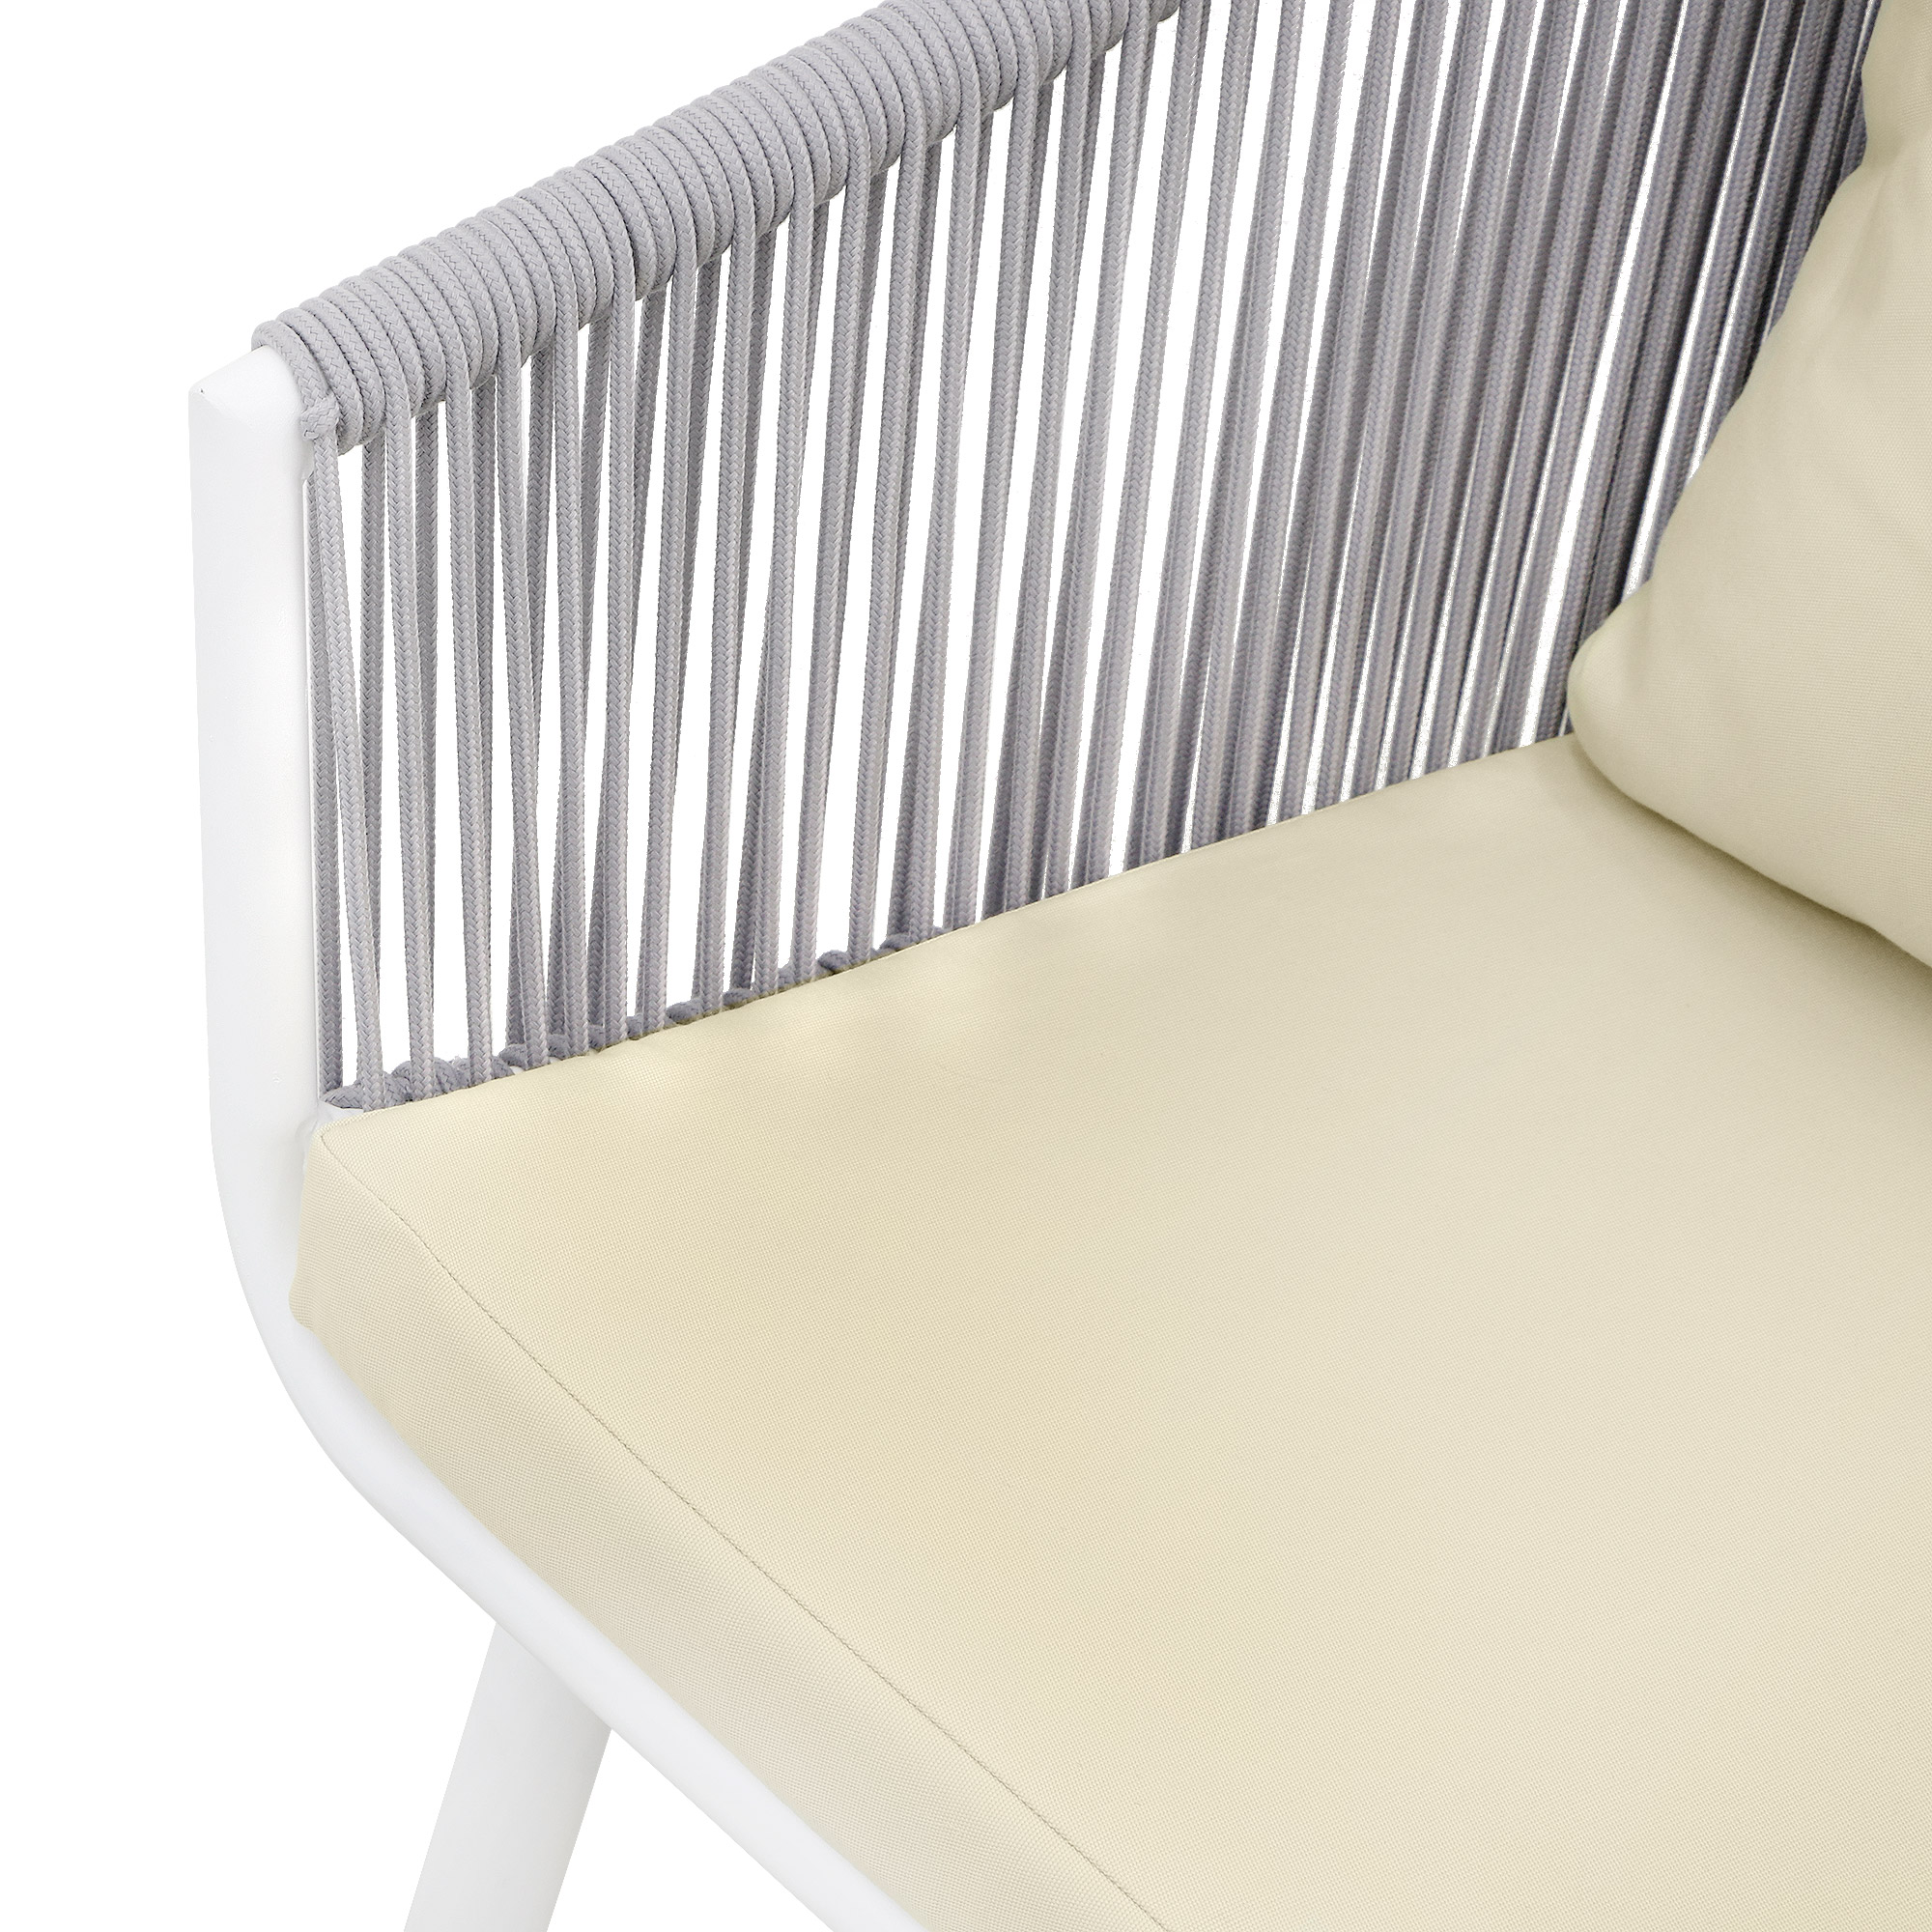 Комплект мебели Obt light 2 кресла+столик, цвет белый, размер 59х64х78 см - фото 5